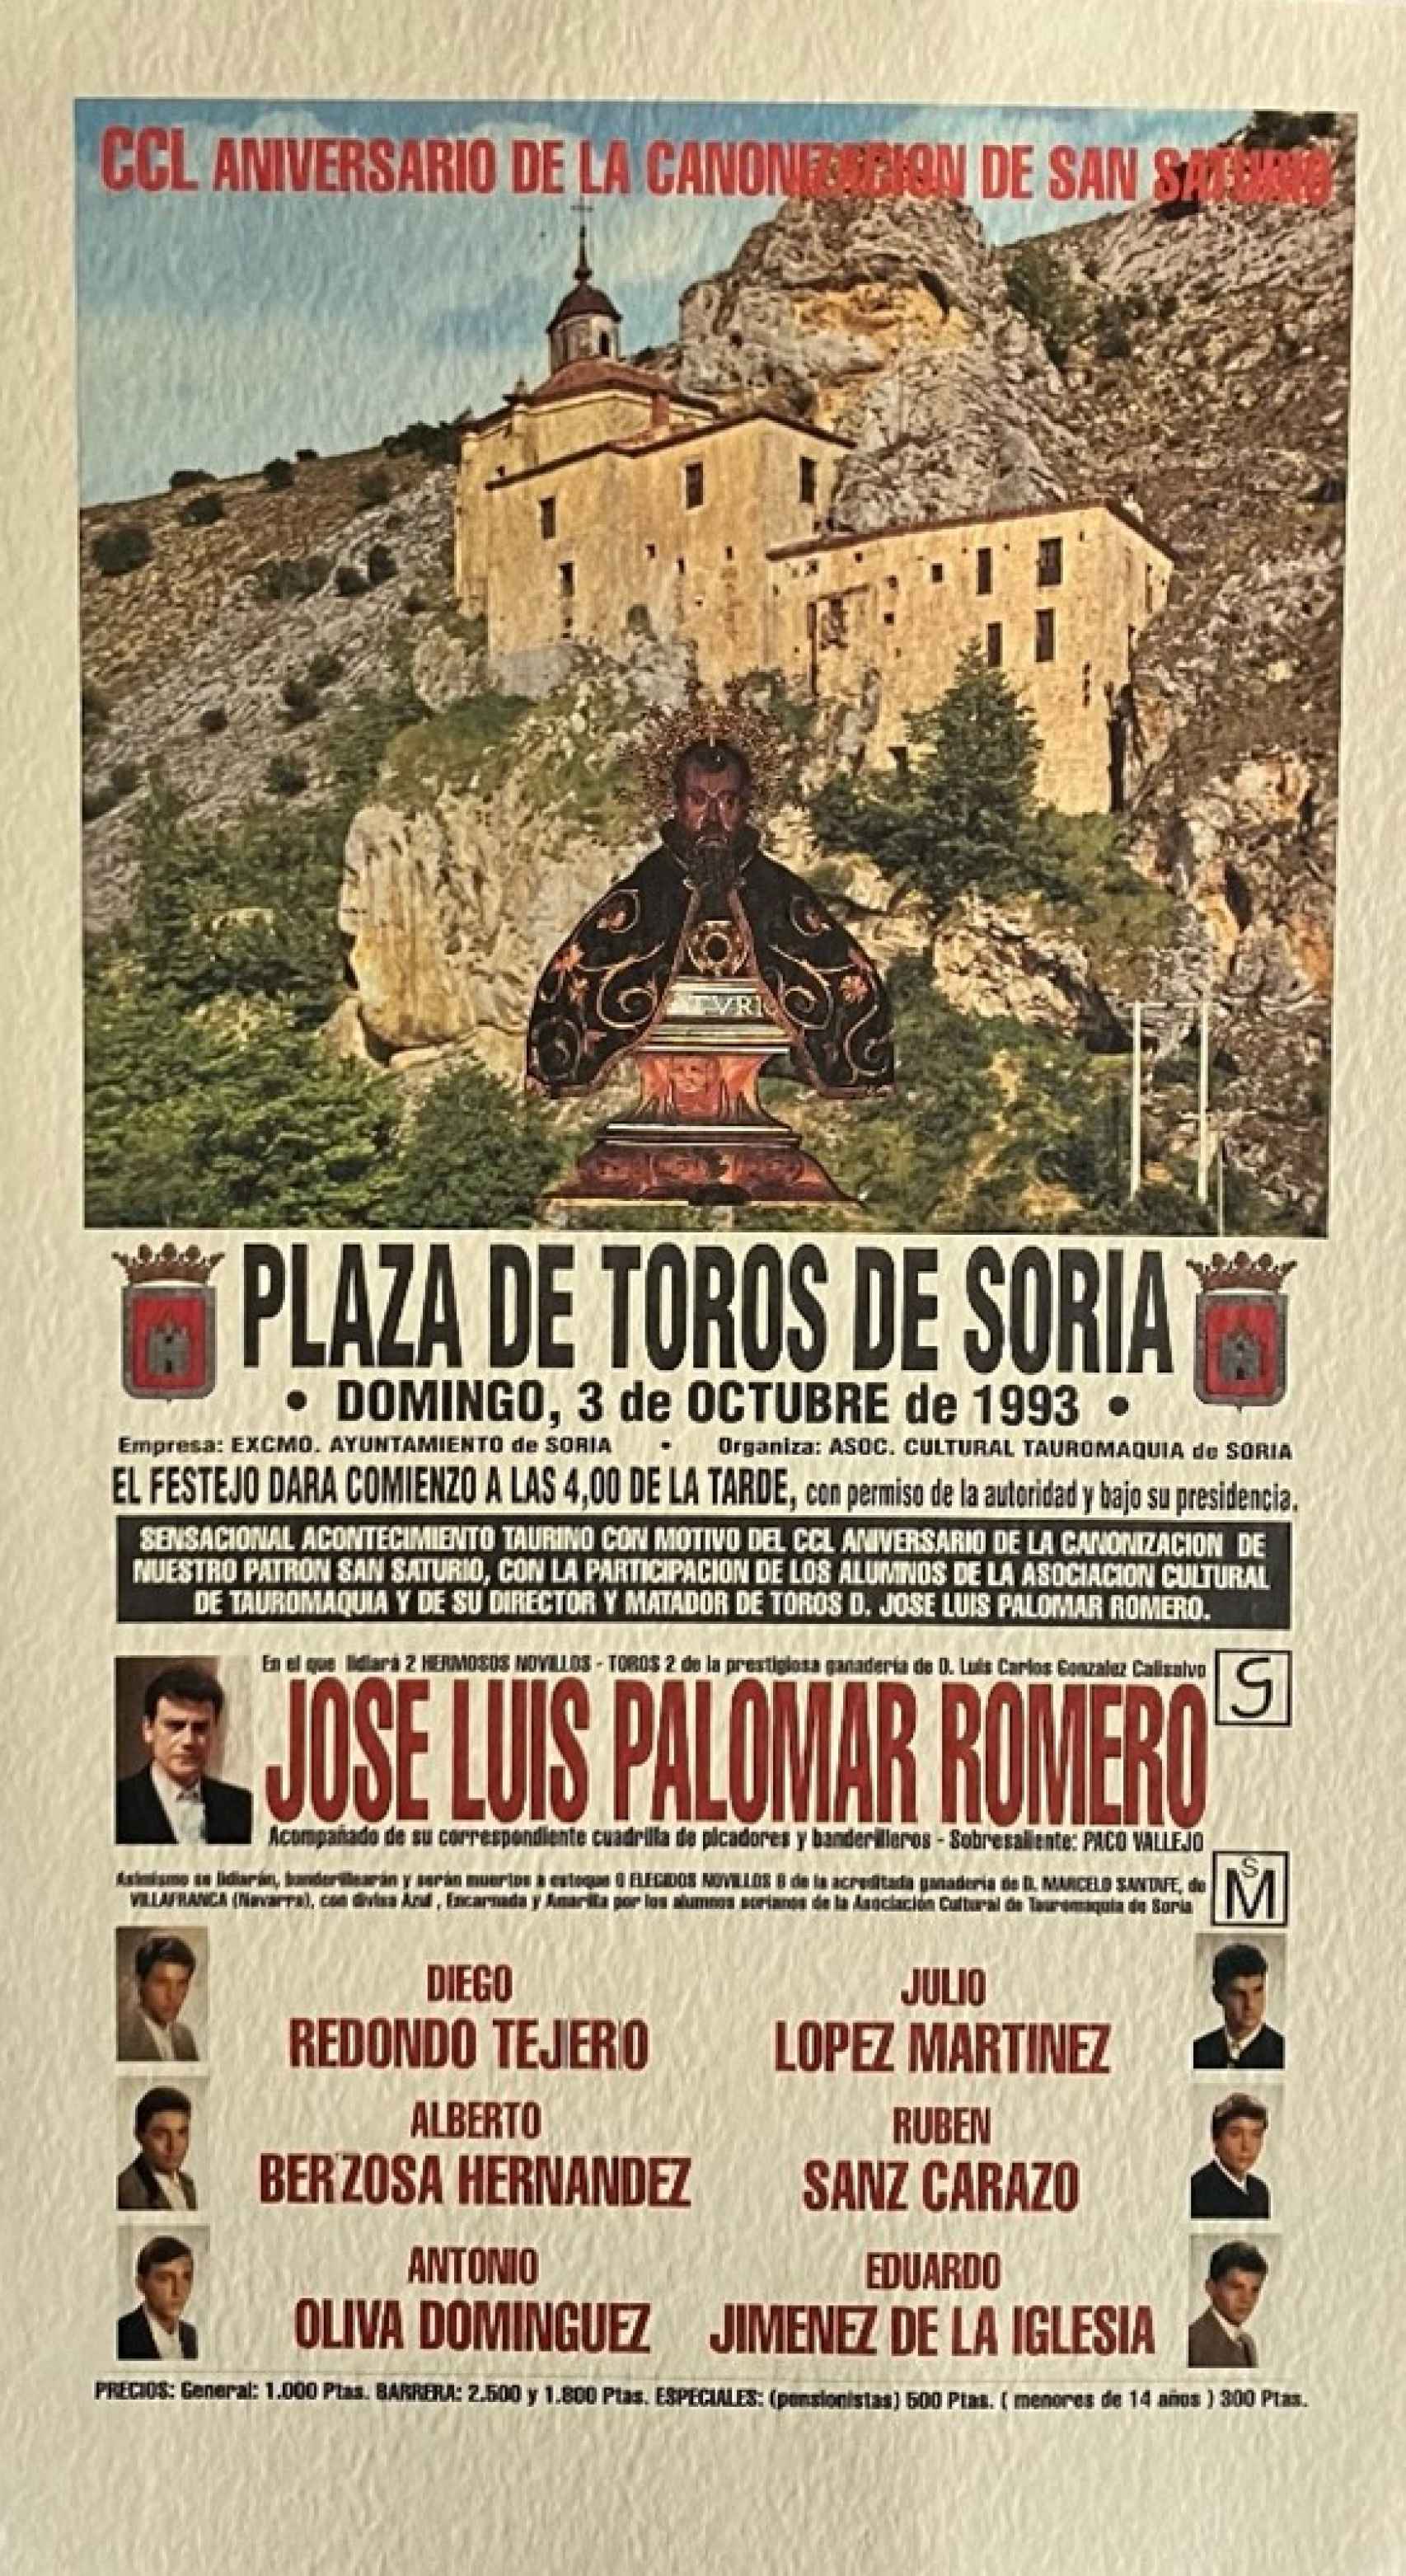 Un cartel de los comienzos de Julio López como becerrista